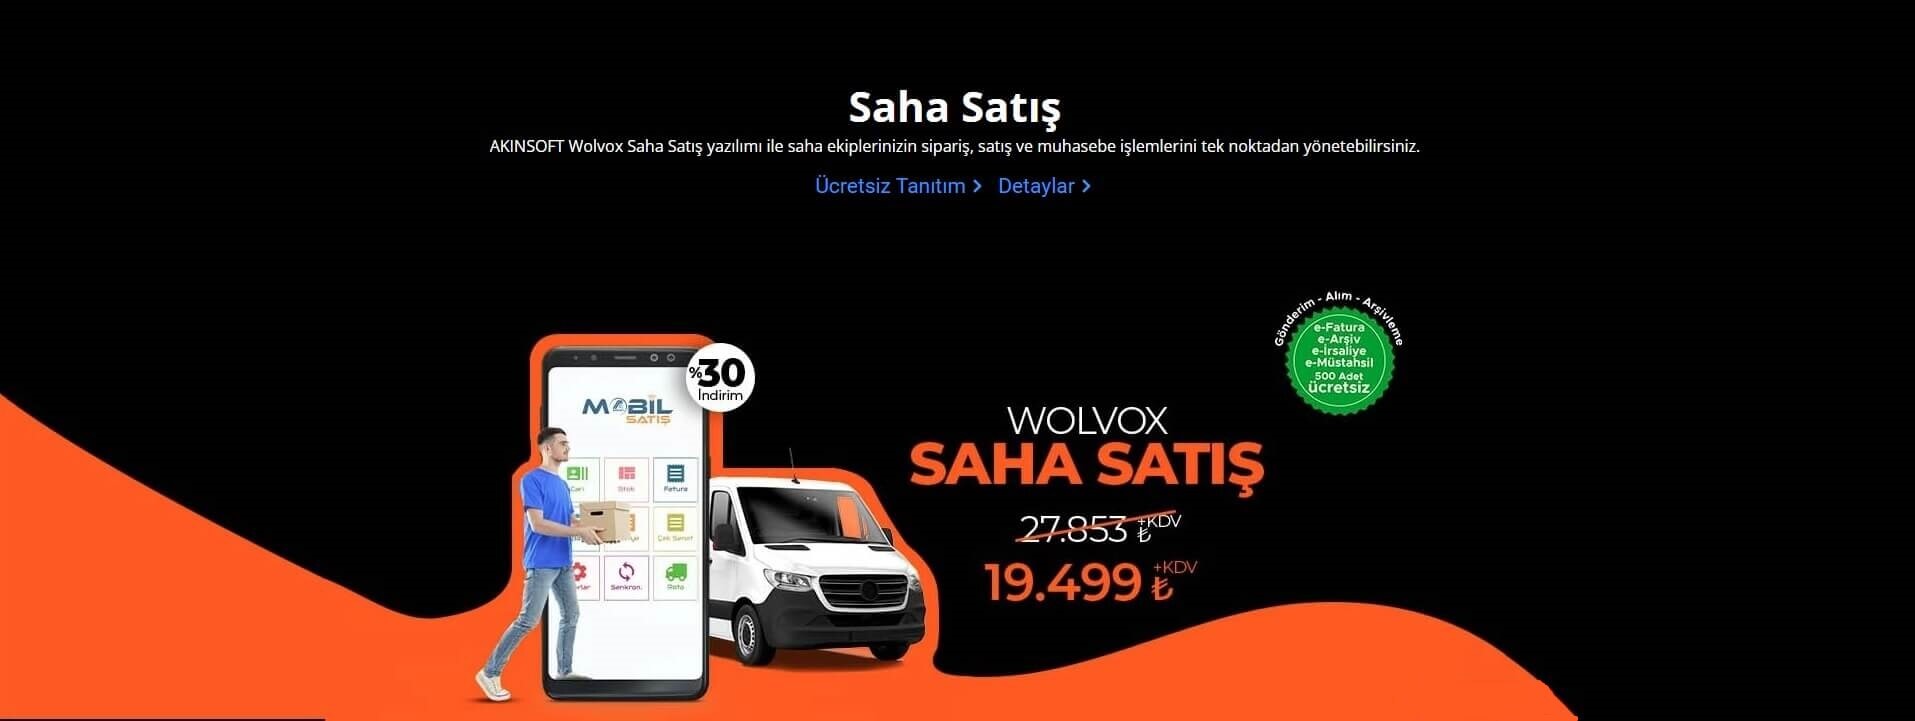 akınosft wolvox mobil satış